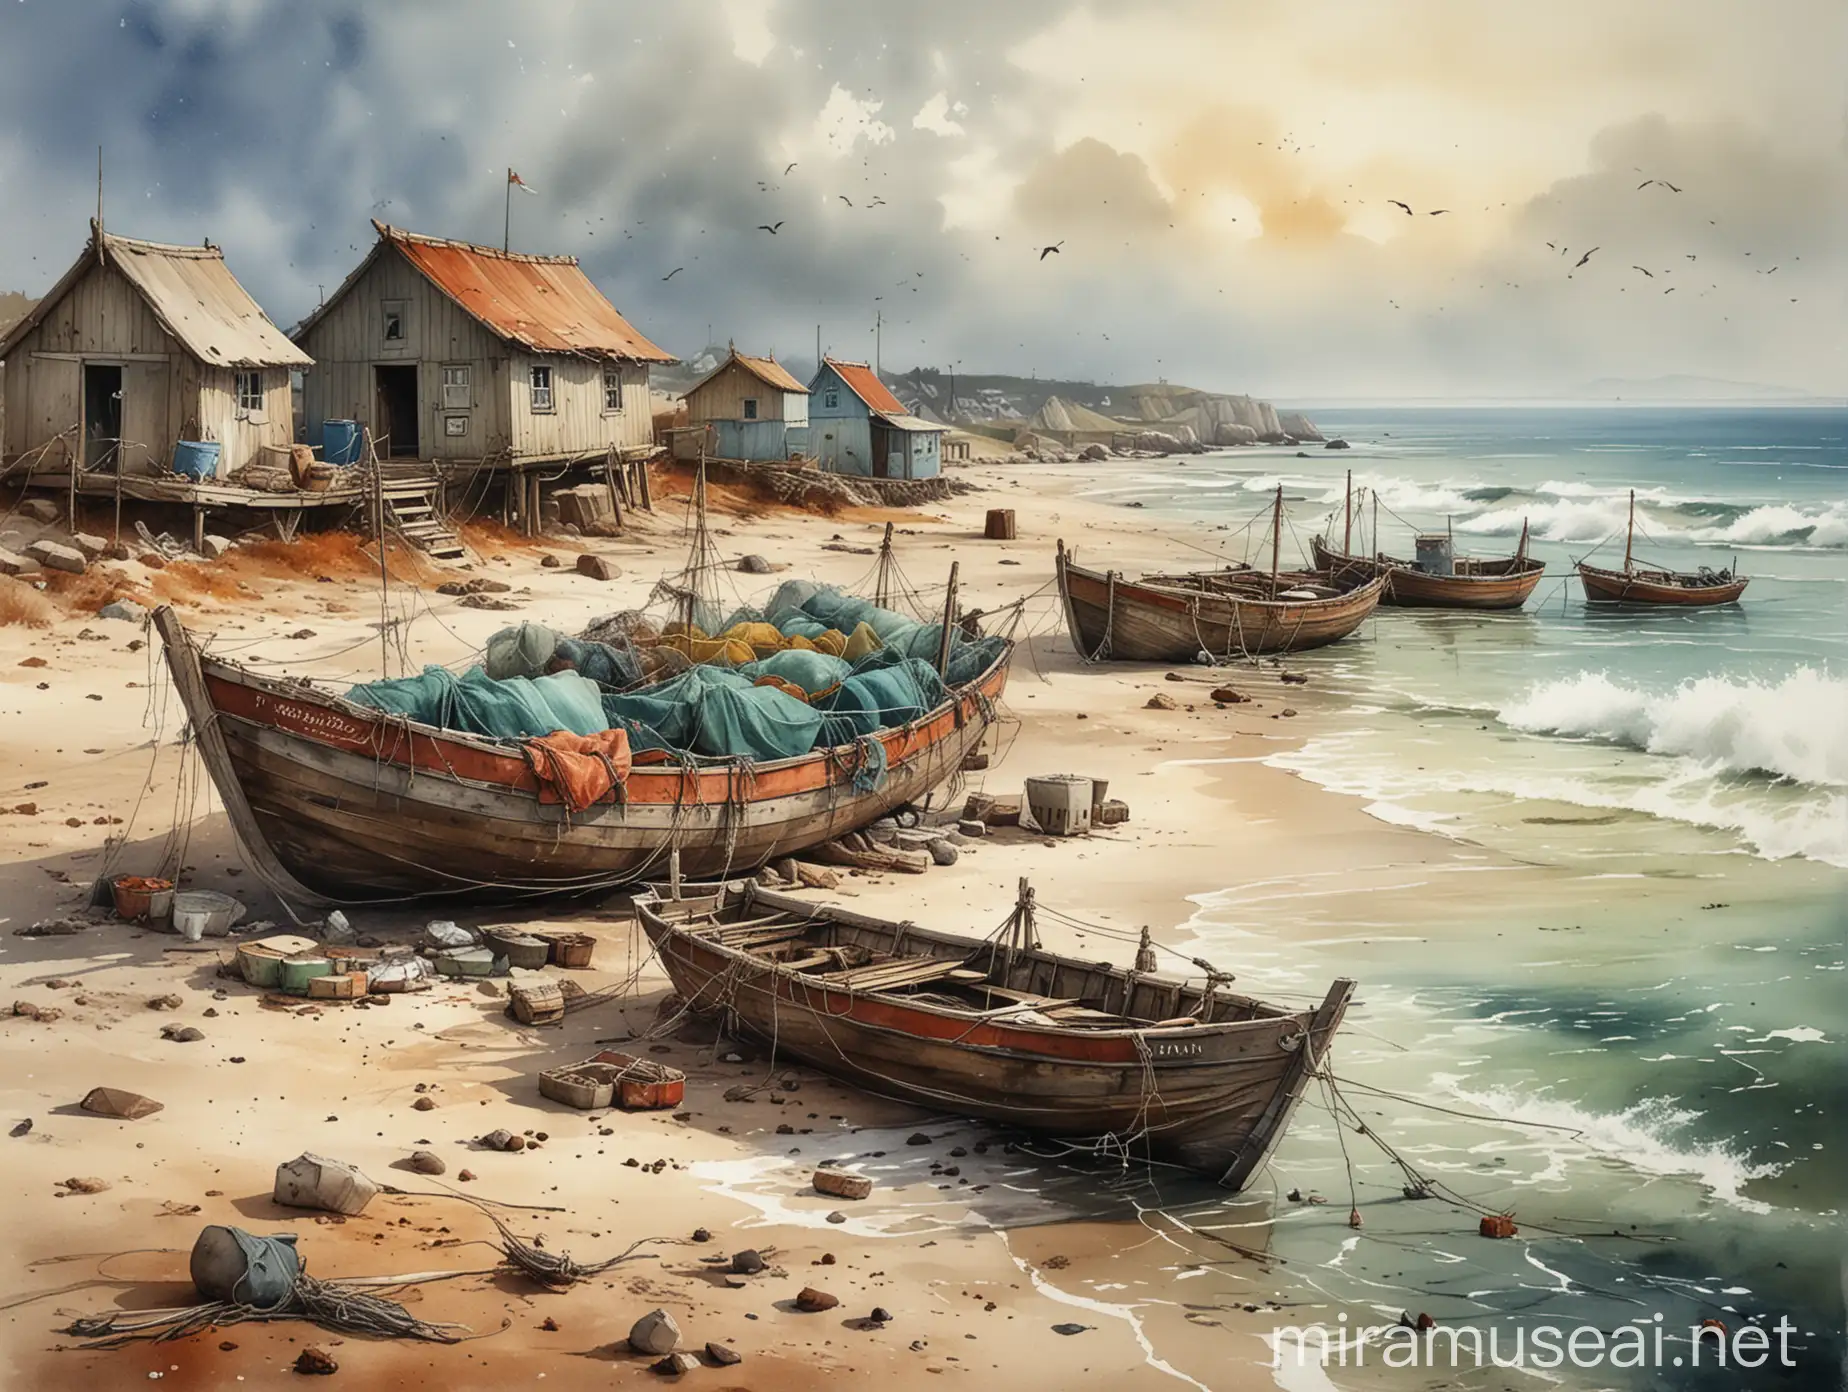 море, рыбацкая хижина, рыболовные сети сохнут на берегу,, перевернутая лодка сохнет на берегу моря, watercolour style by Alexander Jansson